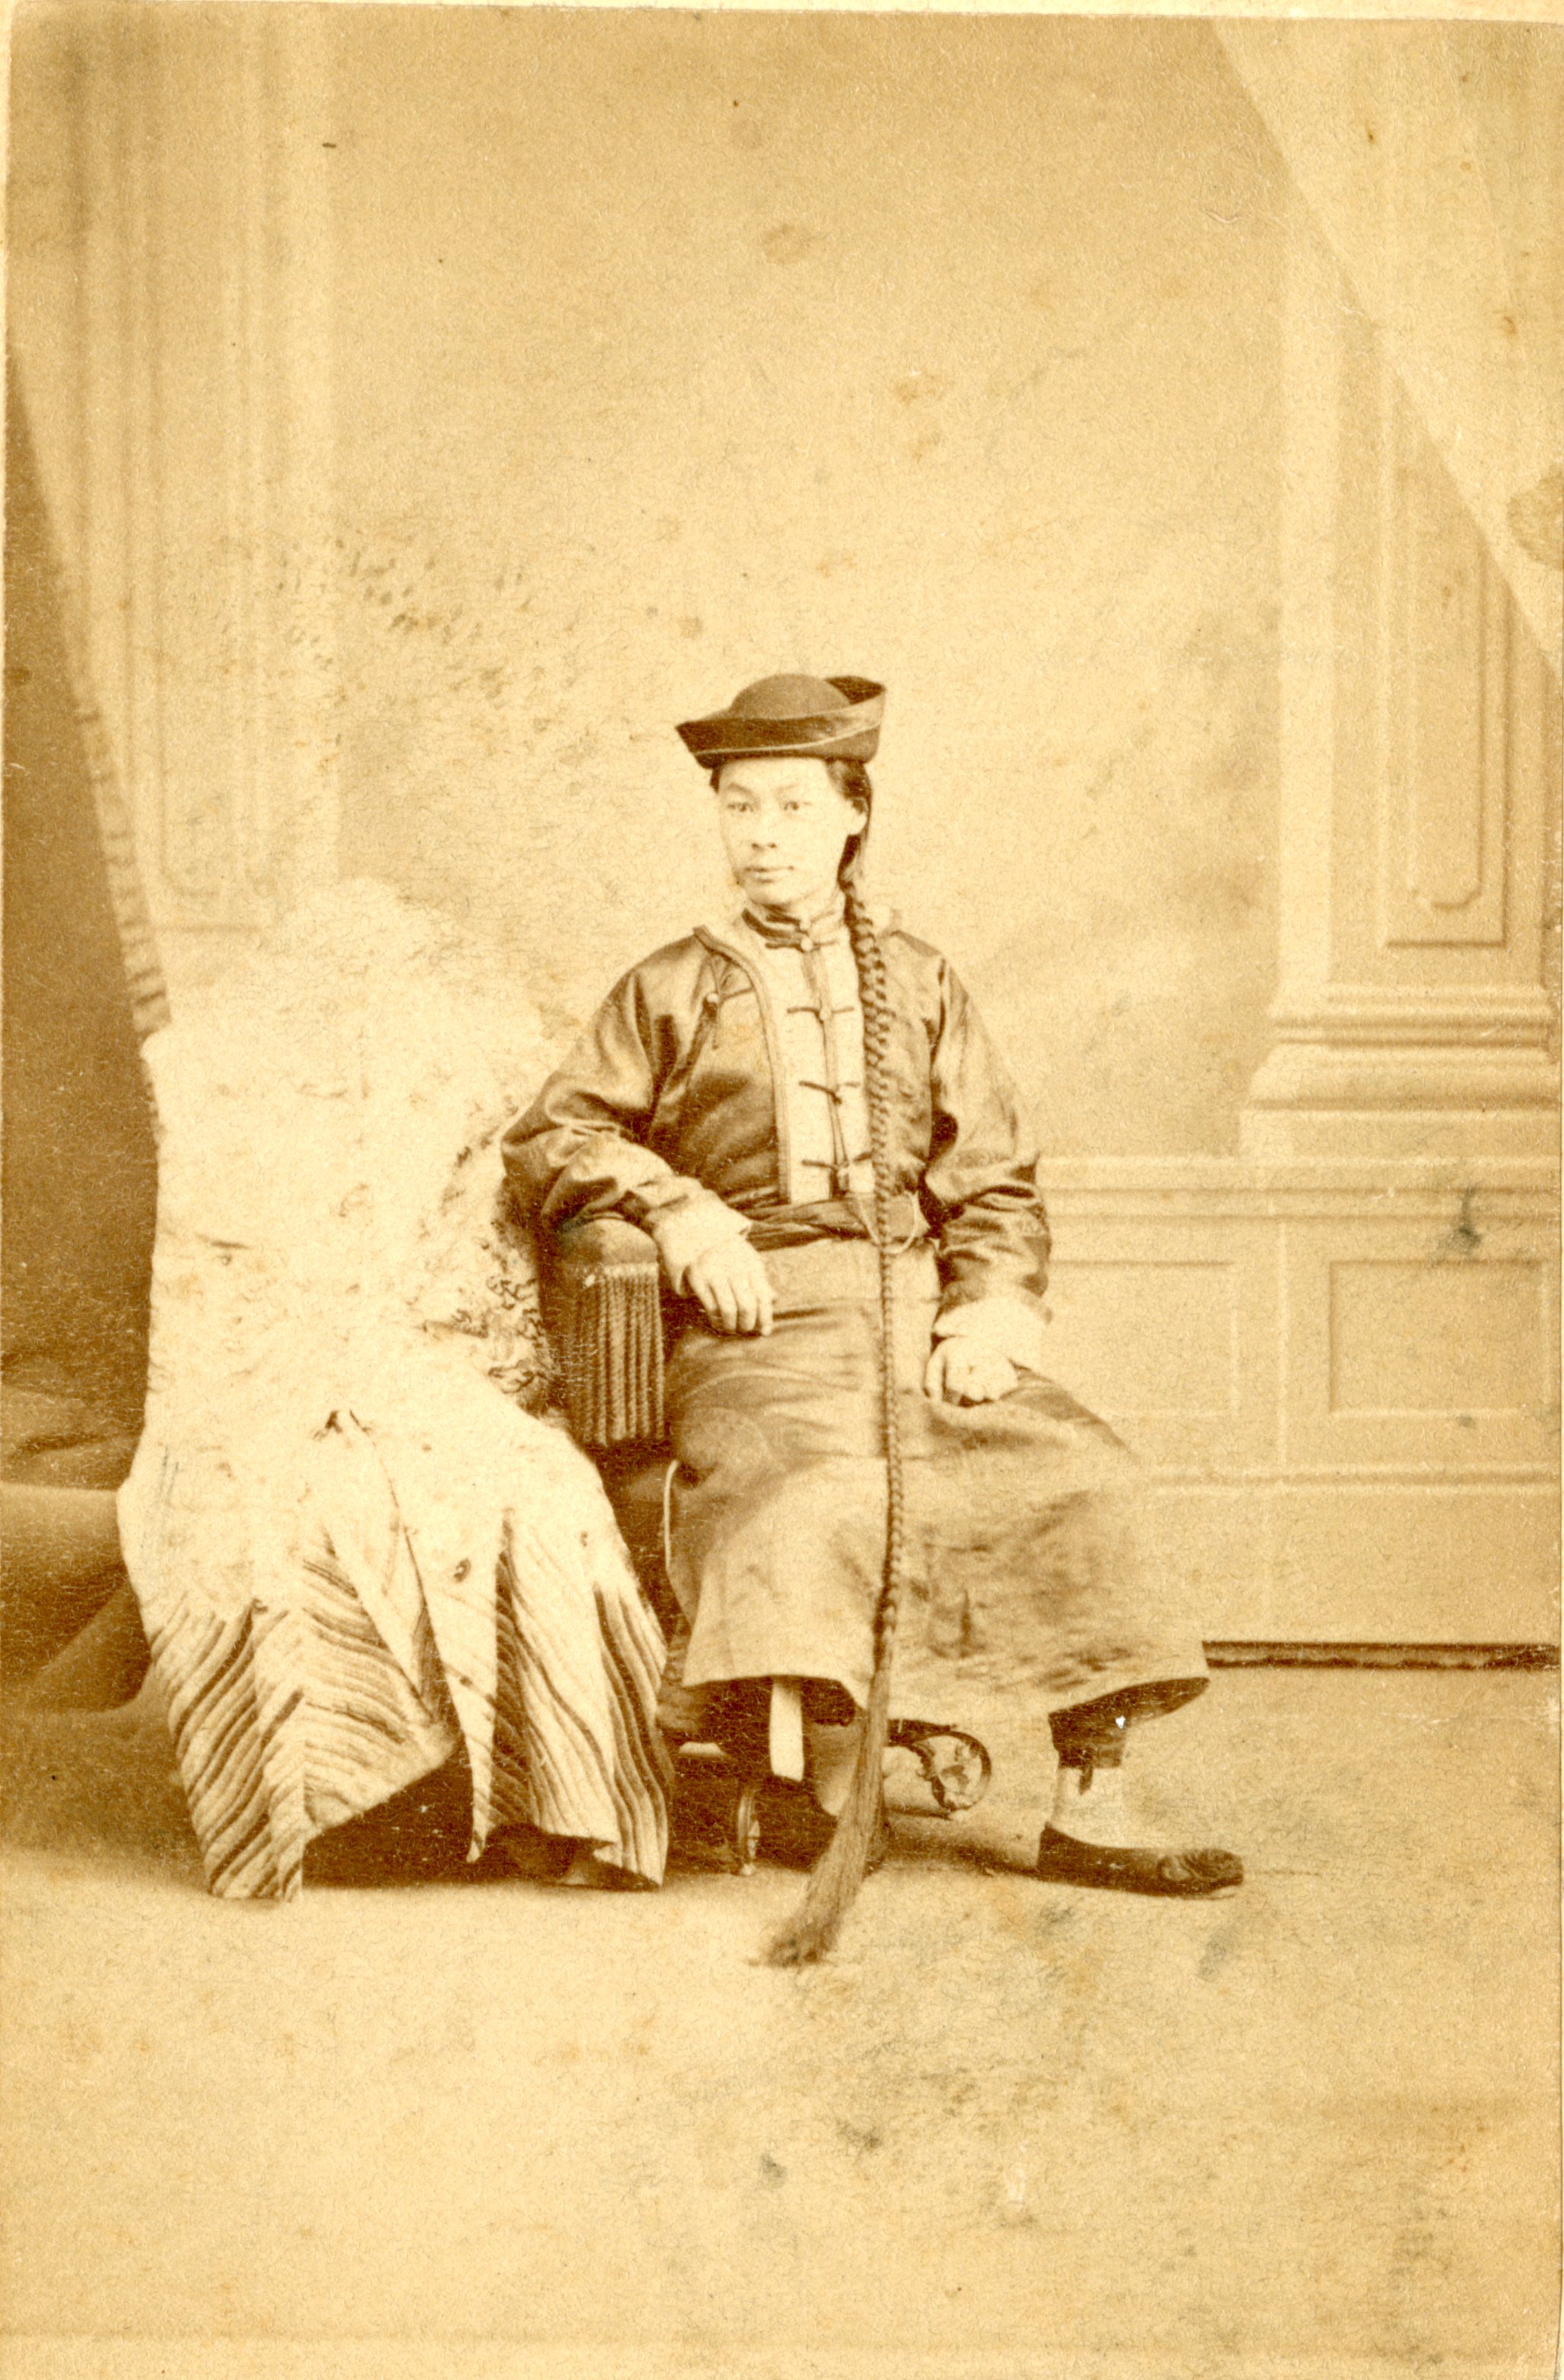 Una mujer vestida con ropa tradicional posa en una silla.